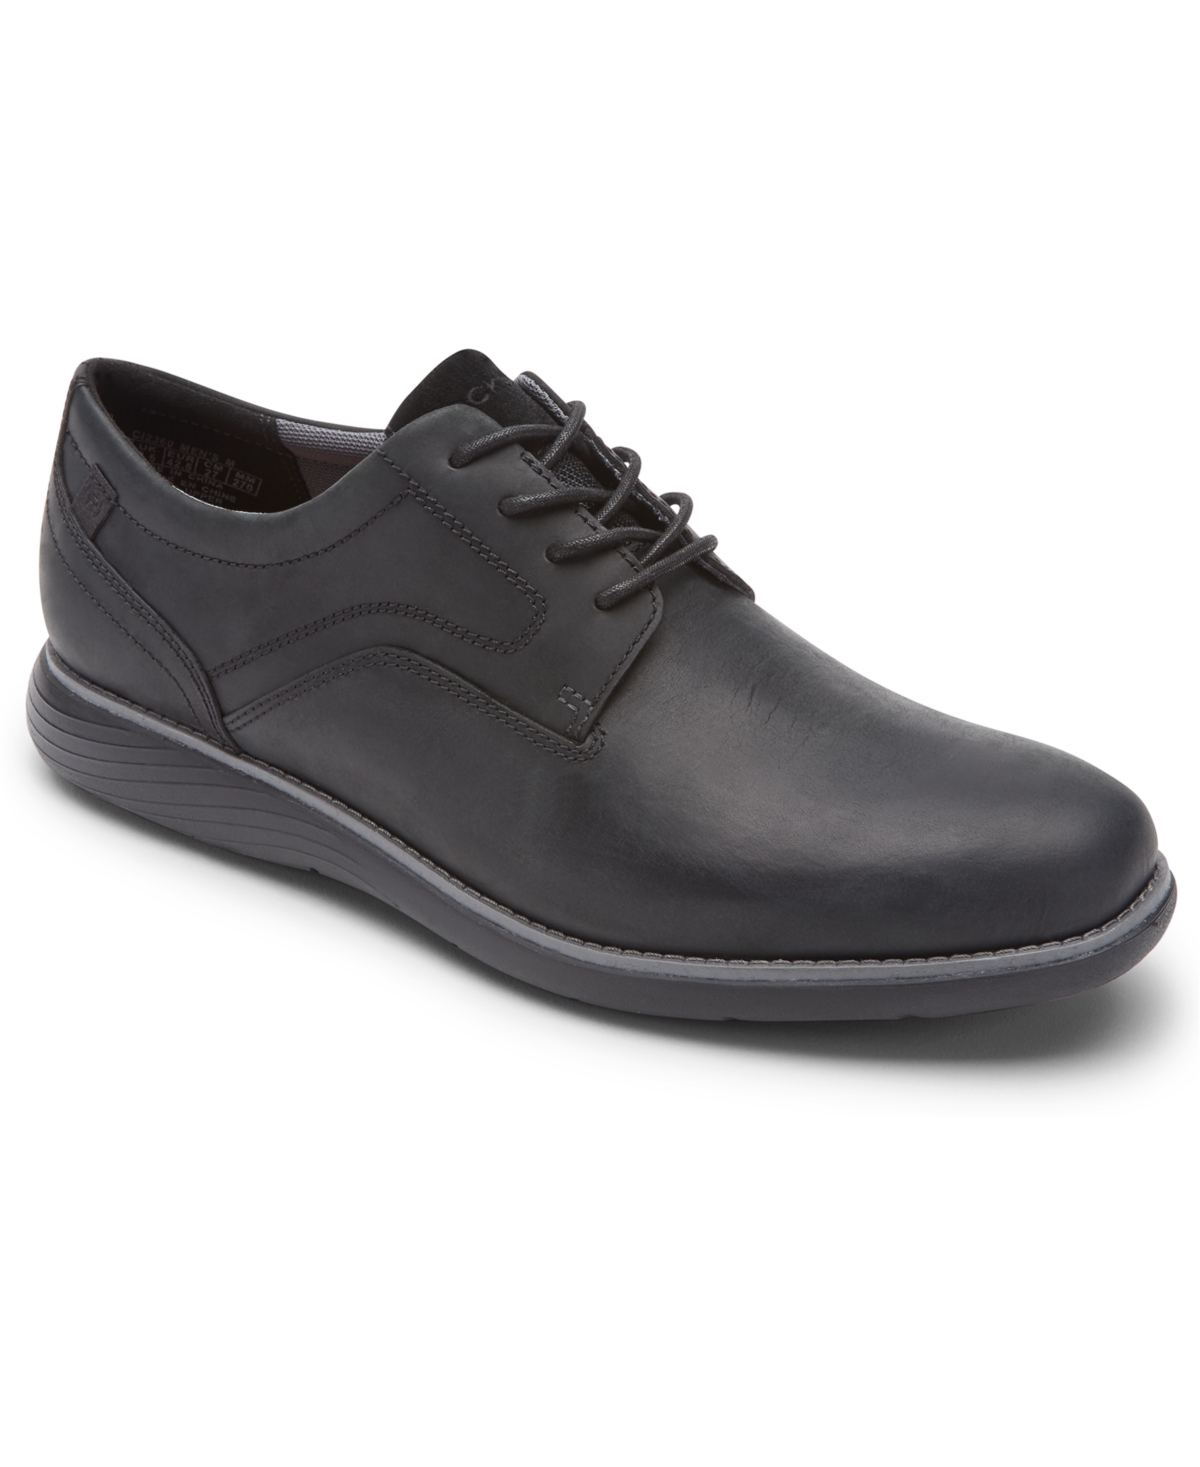 Men's Garett Plain Toe Oxford Shoes - Black